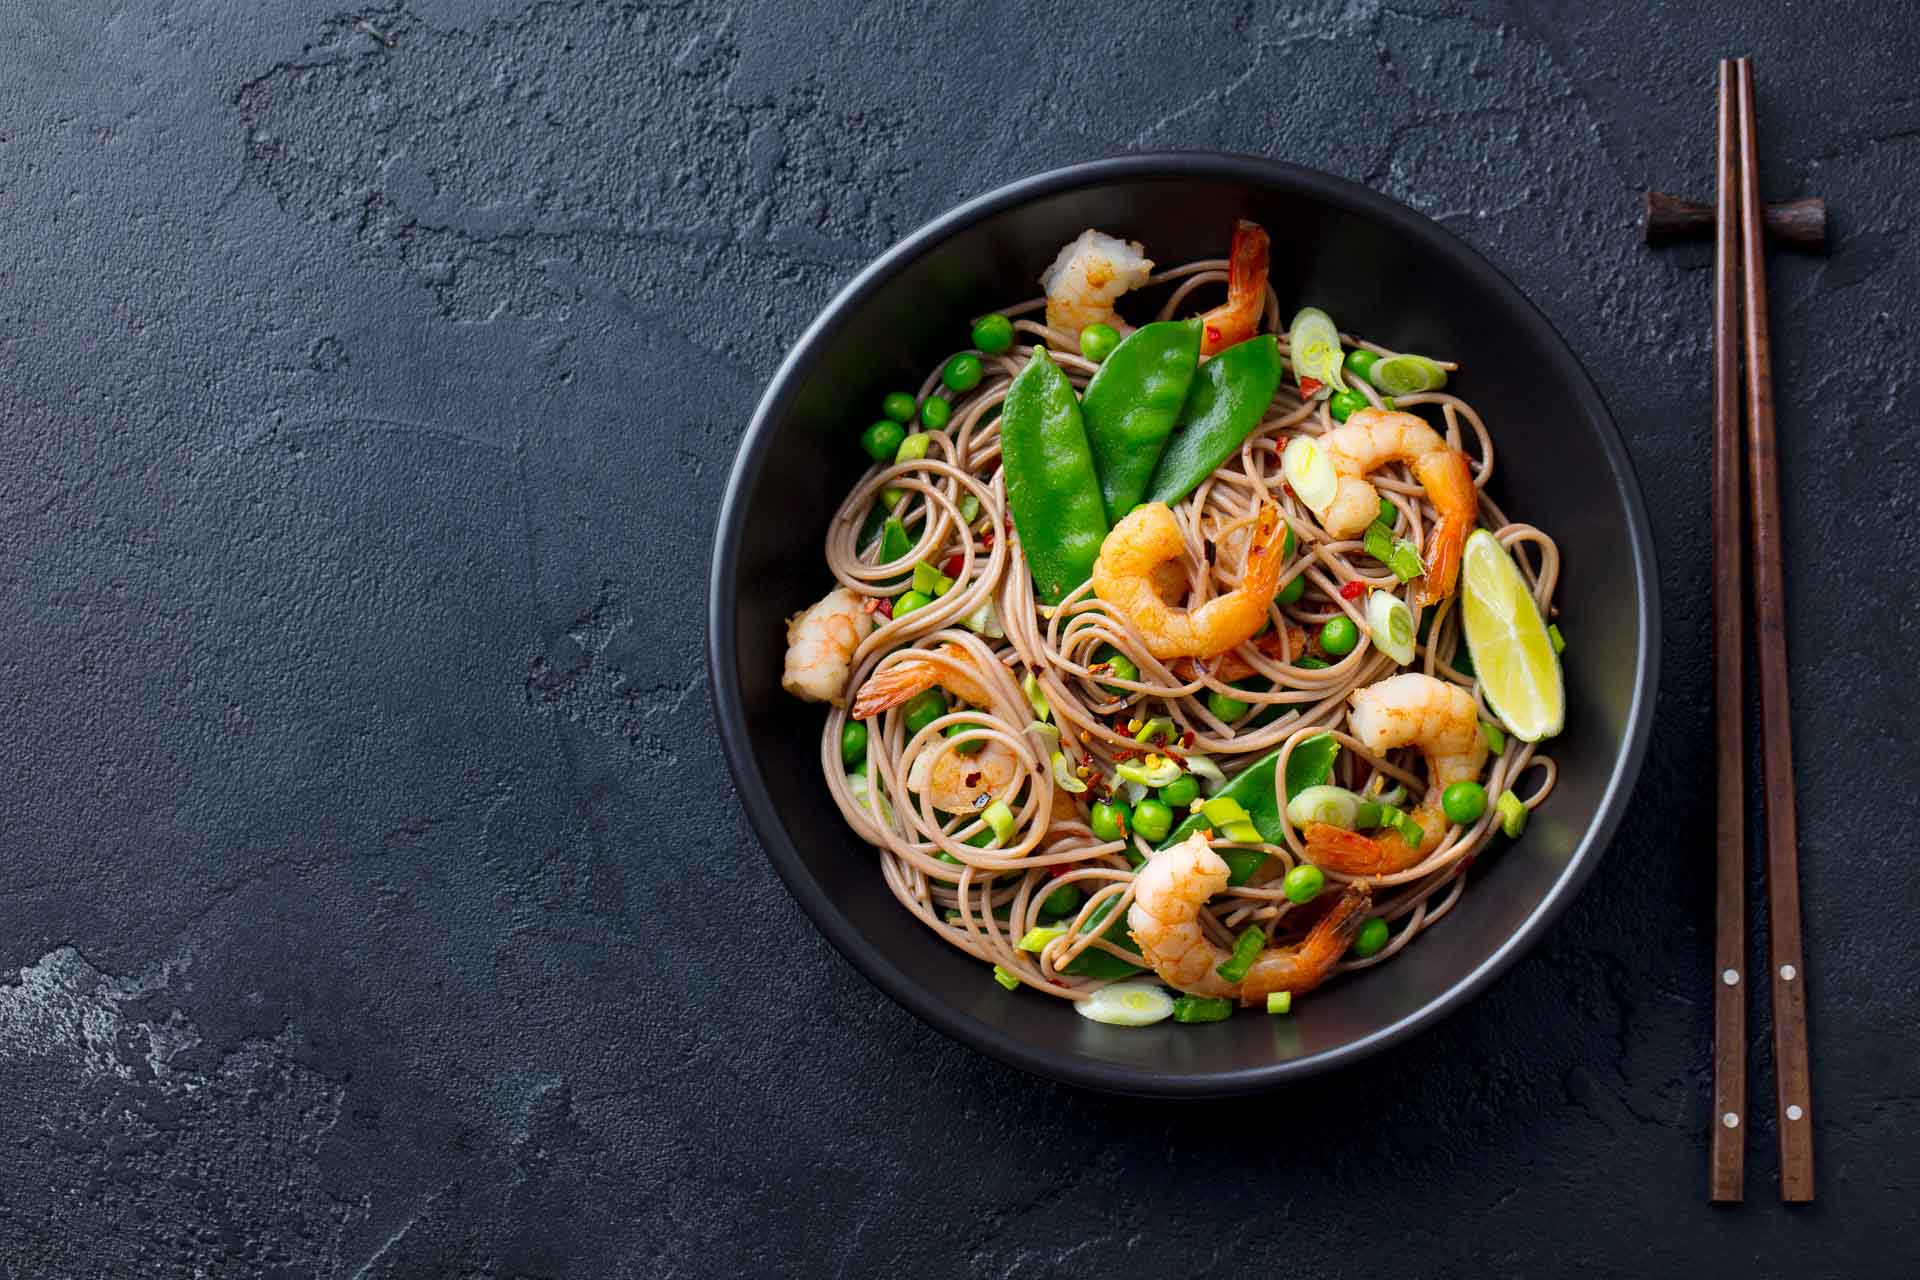 Stir fry noodles with vegetables and shrimps in black bowl. Slate background.